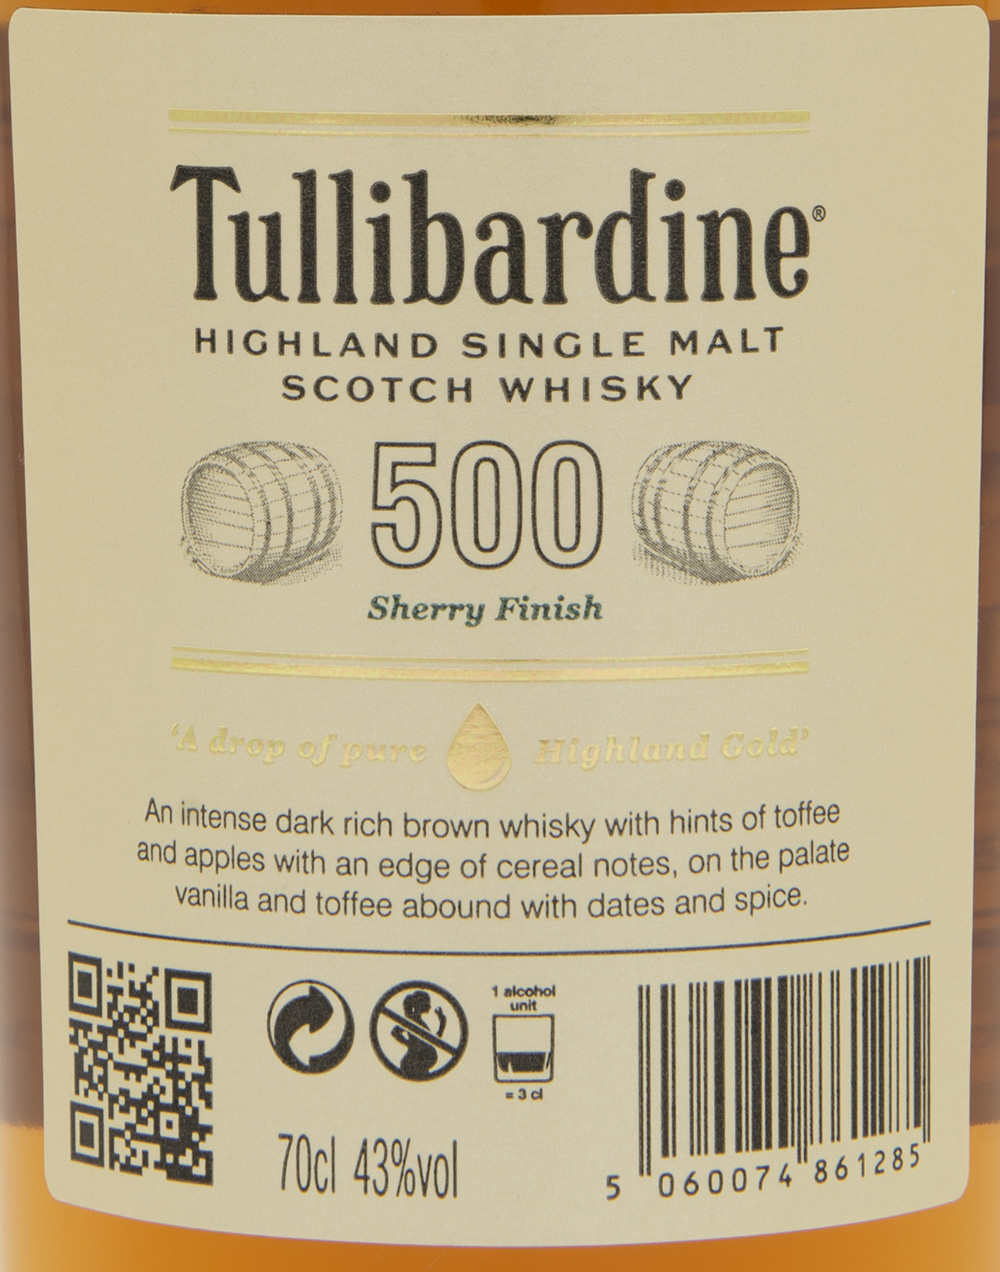 Billede: DSC_3728 Tullibardine 500 Sherry Finish - bottle back label.jpg